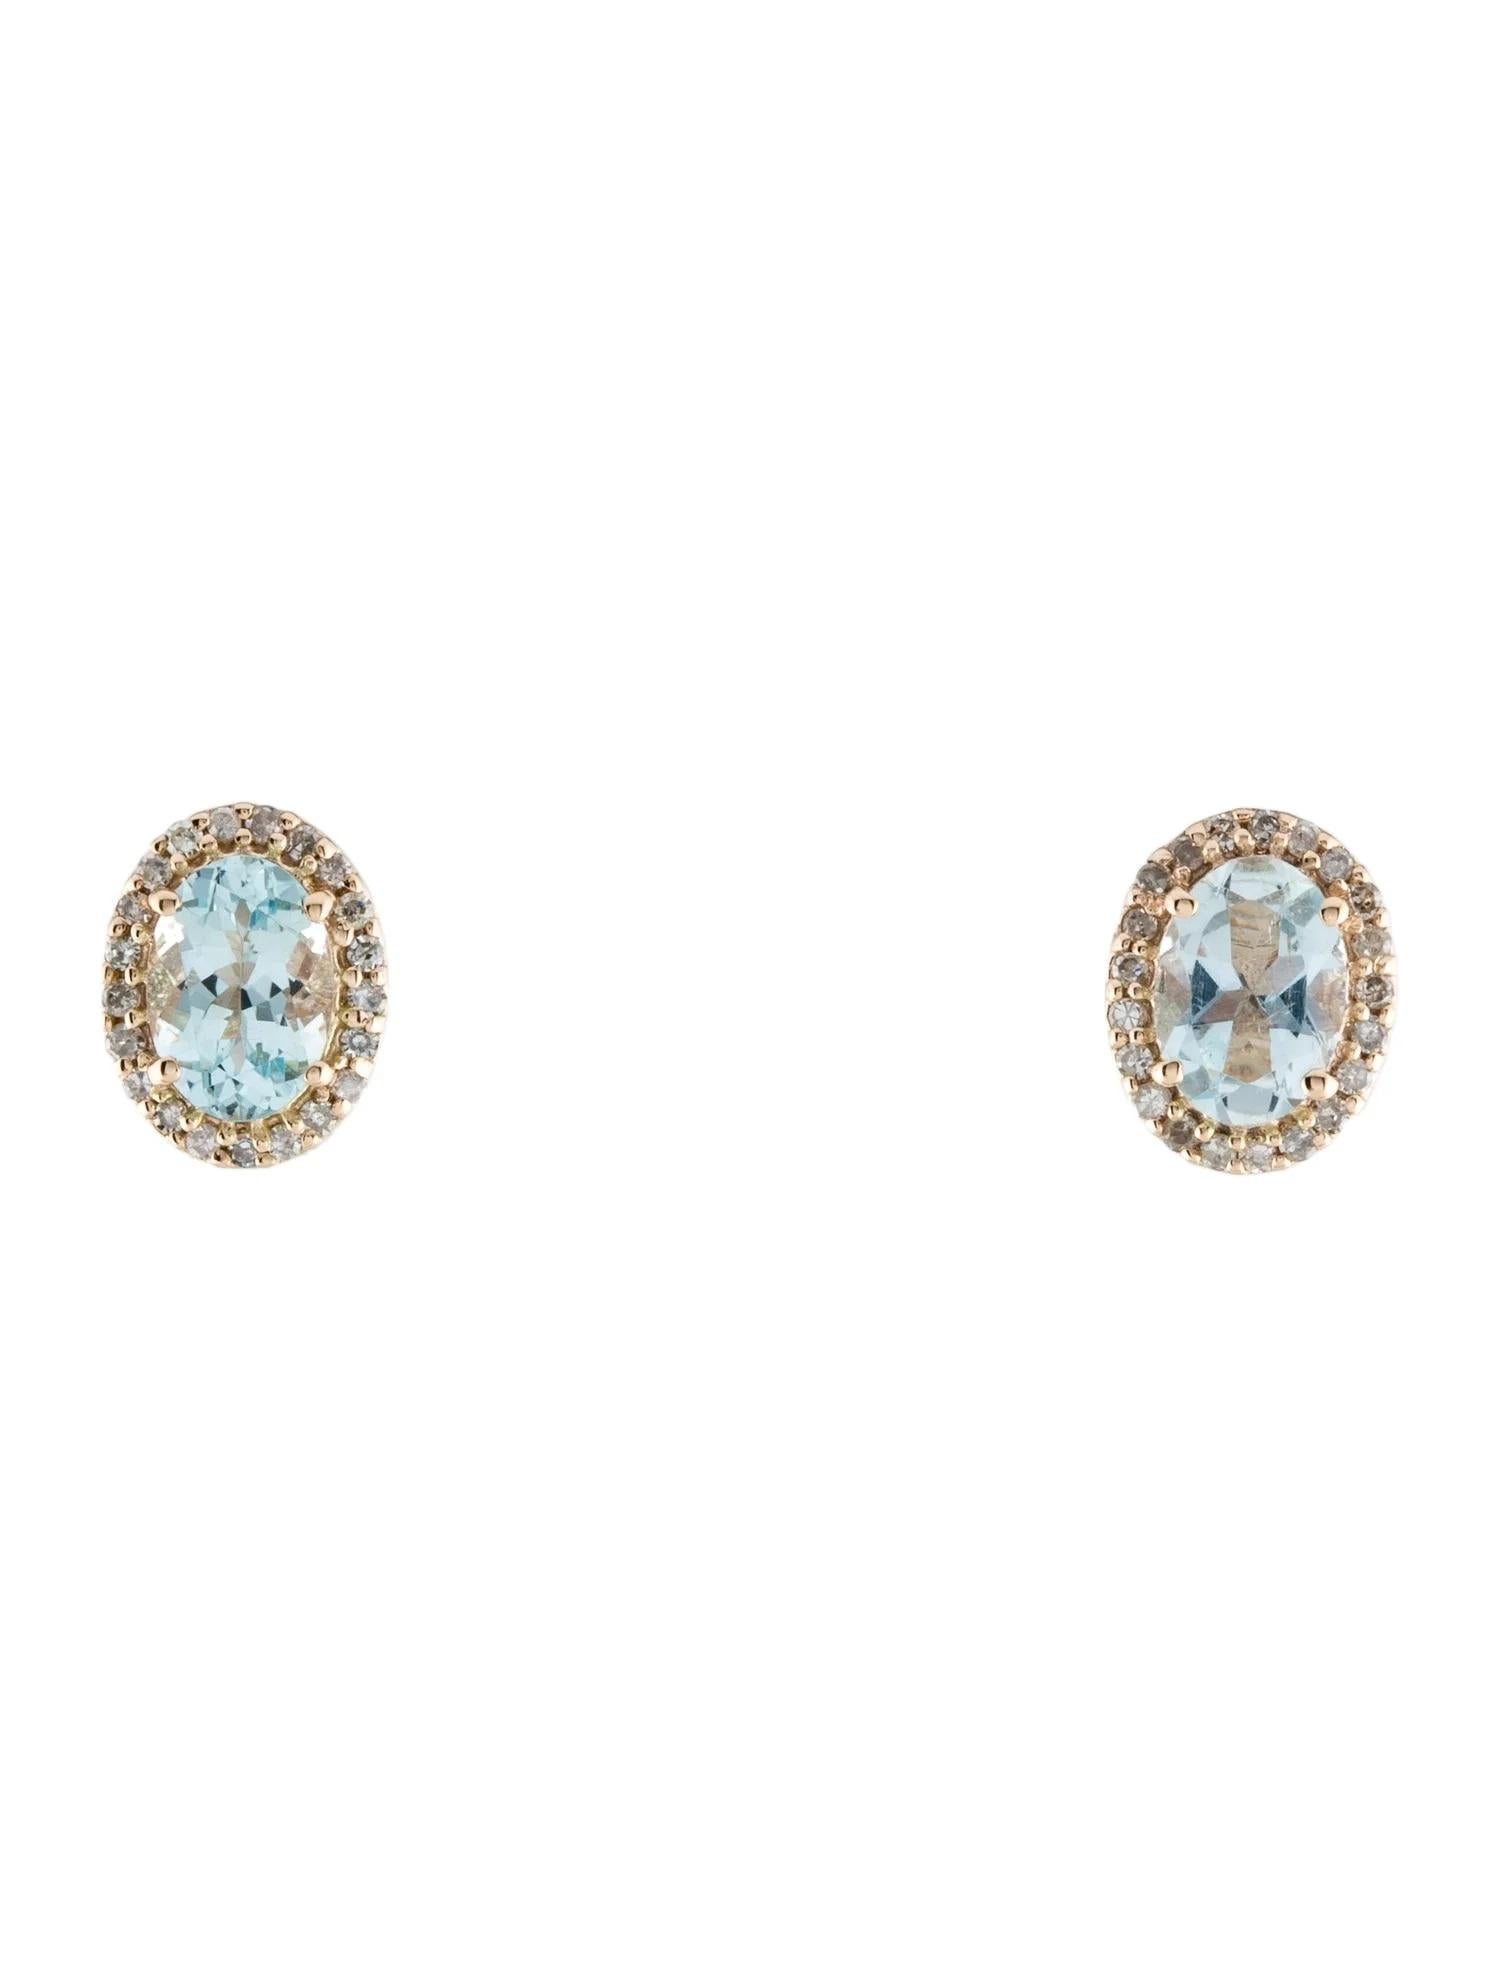 Oval Cut 14K Aquamarine & Diamond Stud Earrings, Oval Blue Stones, 0.16ct Total Diamond For Sale